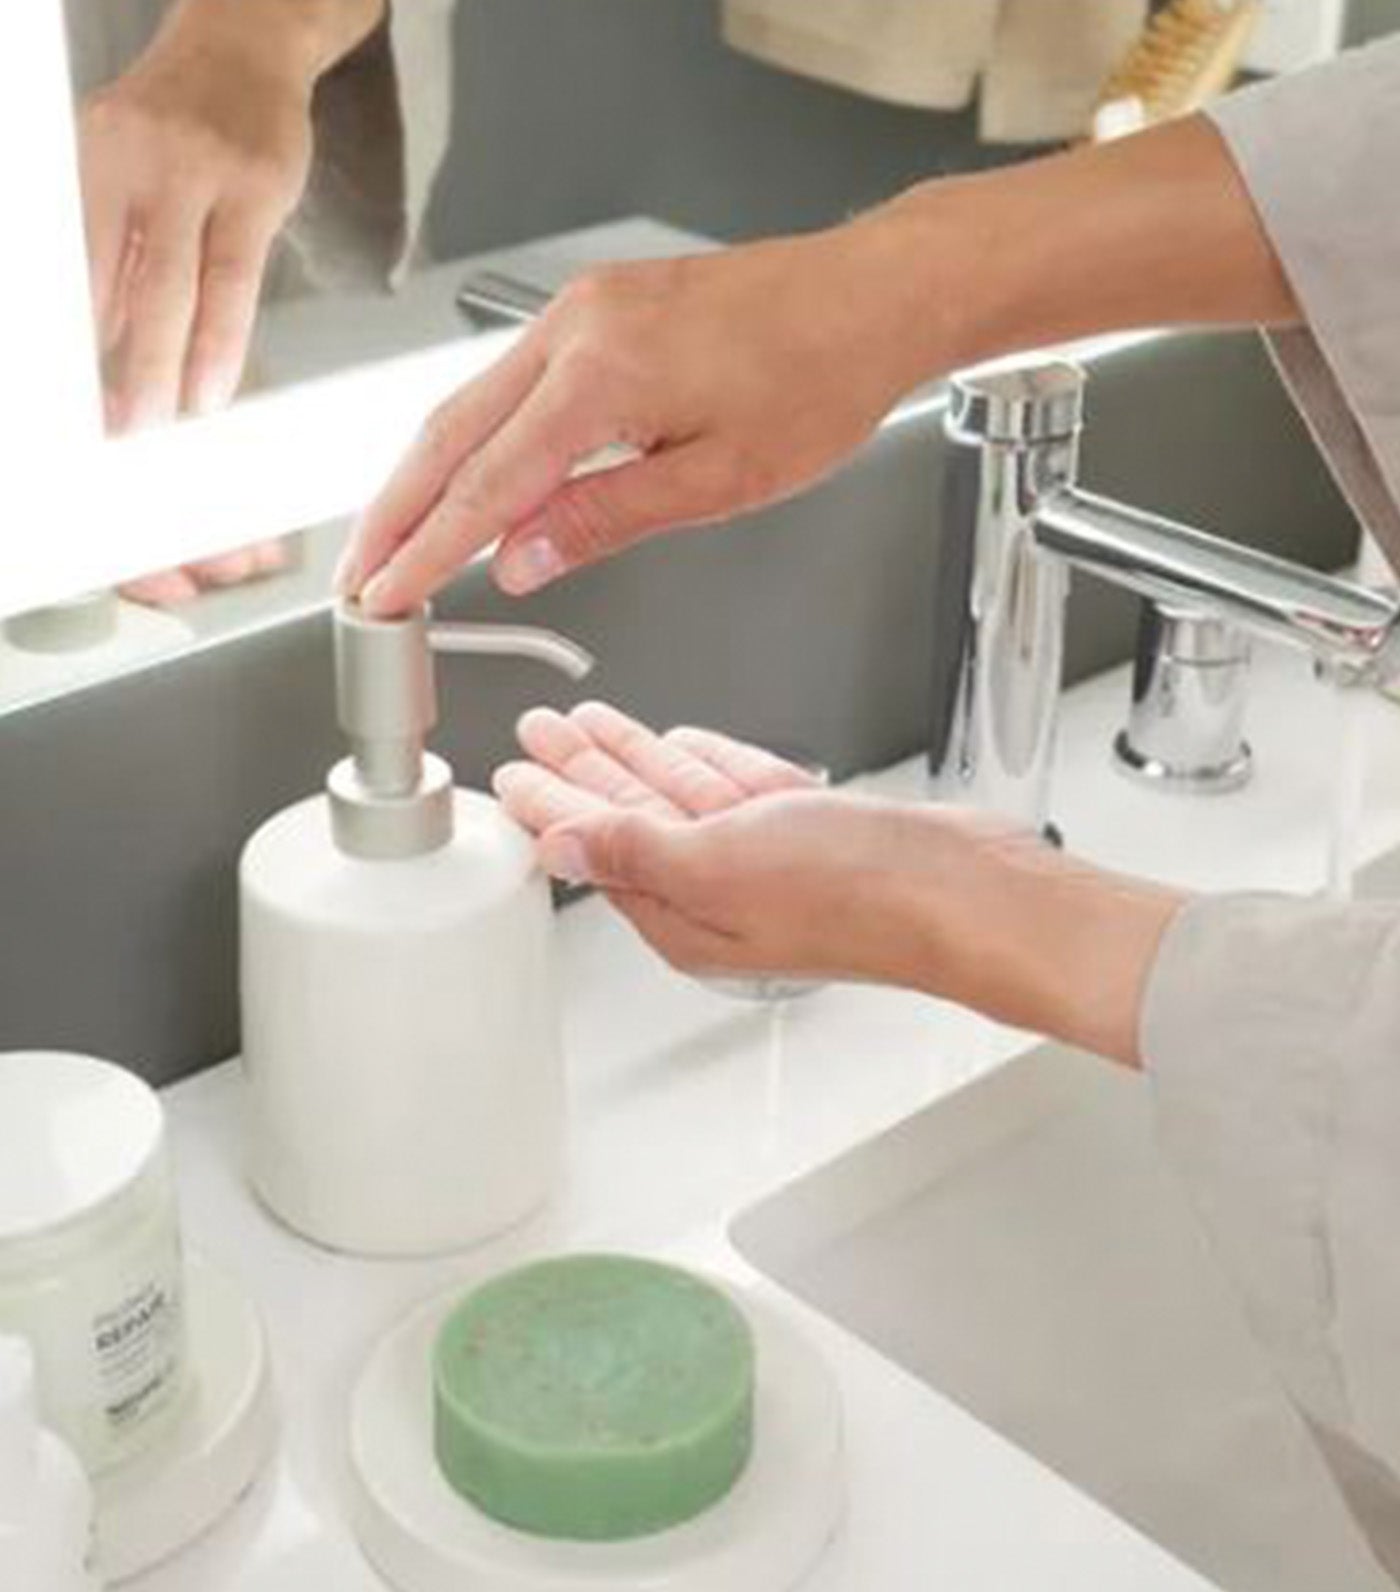 MakeRoom Ceramic Eco Vanity Soap Dispenser